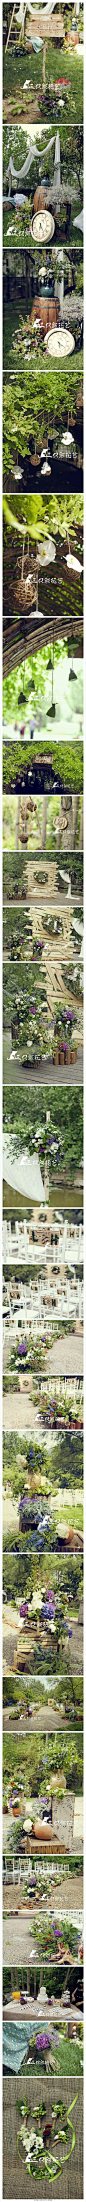 【紫色森系主题婚礼 梦想中的安静花园】郁郁葱葱的林间，一场精心布置的森系婚礼。木桩、陶罐、花器，枝枝蔓蔓的花草，构成了梦想中安静的花园。蓝紫色的绣球花，一团团在视野中，是这个夏天最热情的祝福。感谢三只熊花艺-沁园恒硕 的分享http://t.cn/RPg5Re0